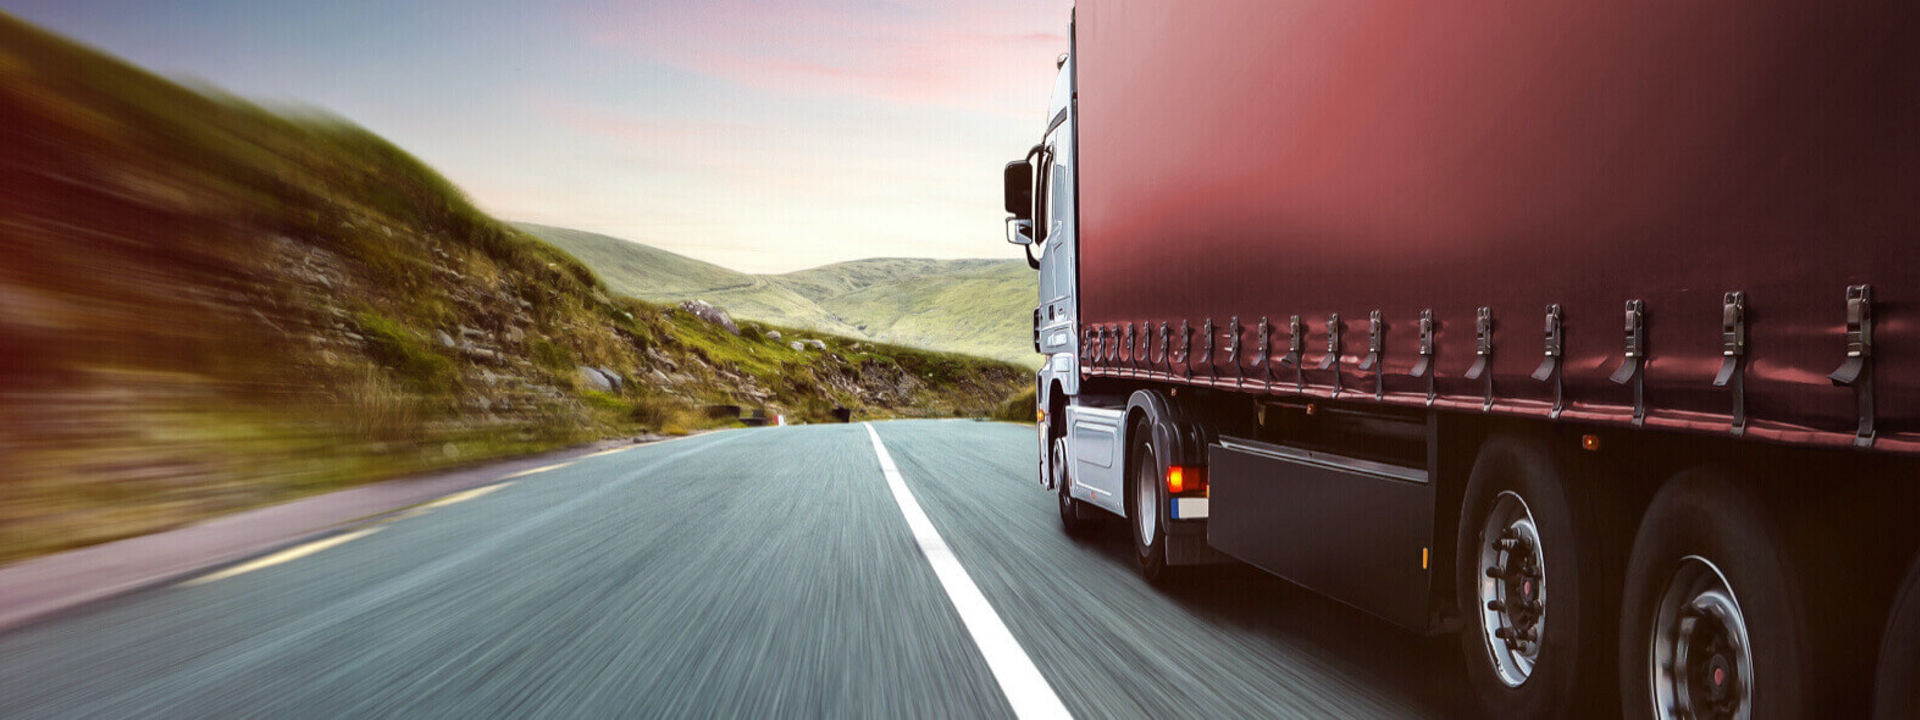 Esta imagen muestra una vista lateral de una flota comercial conduciendo en la carretera con neumáticos de camión Bridgestone.